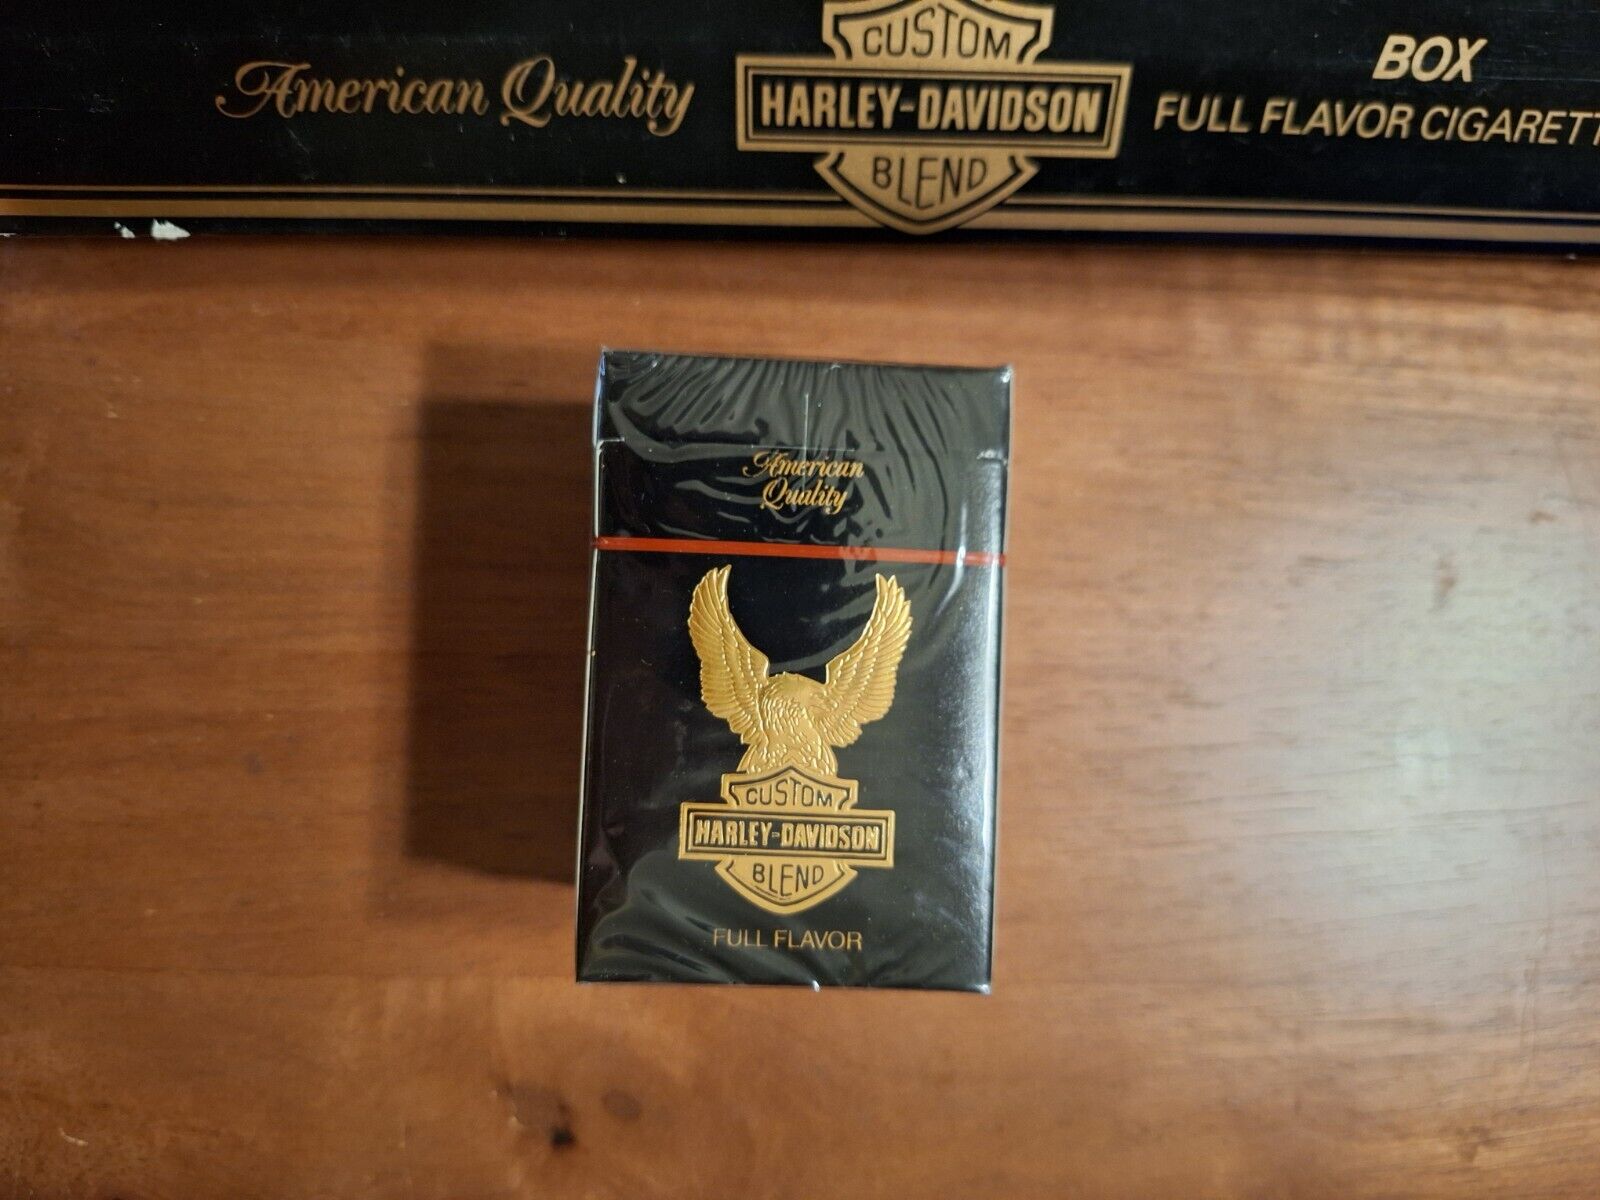 Rare Vintage Harley-Davidson Cigarettes - Box, Full Flavor, Unopened, No Damage